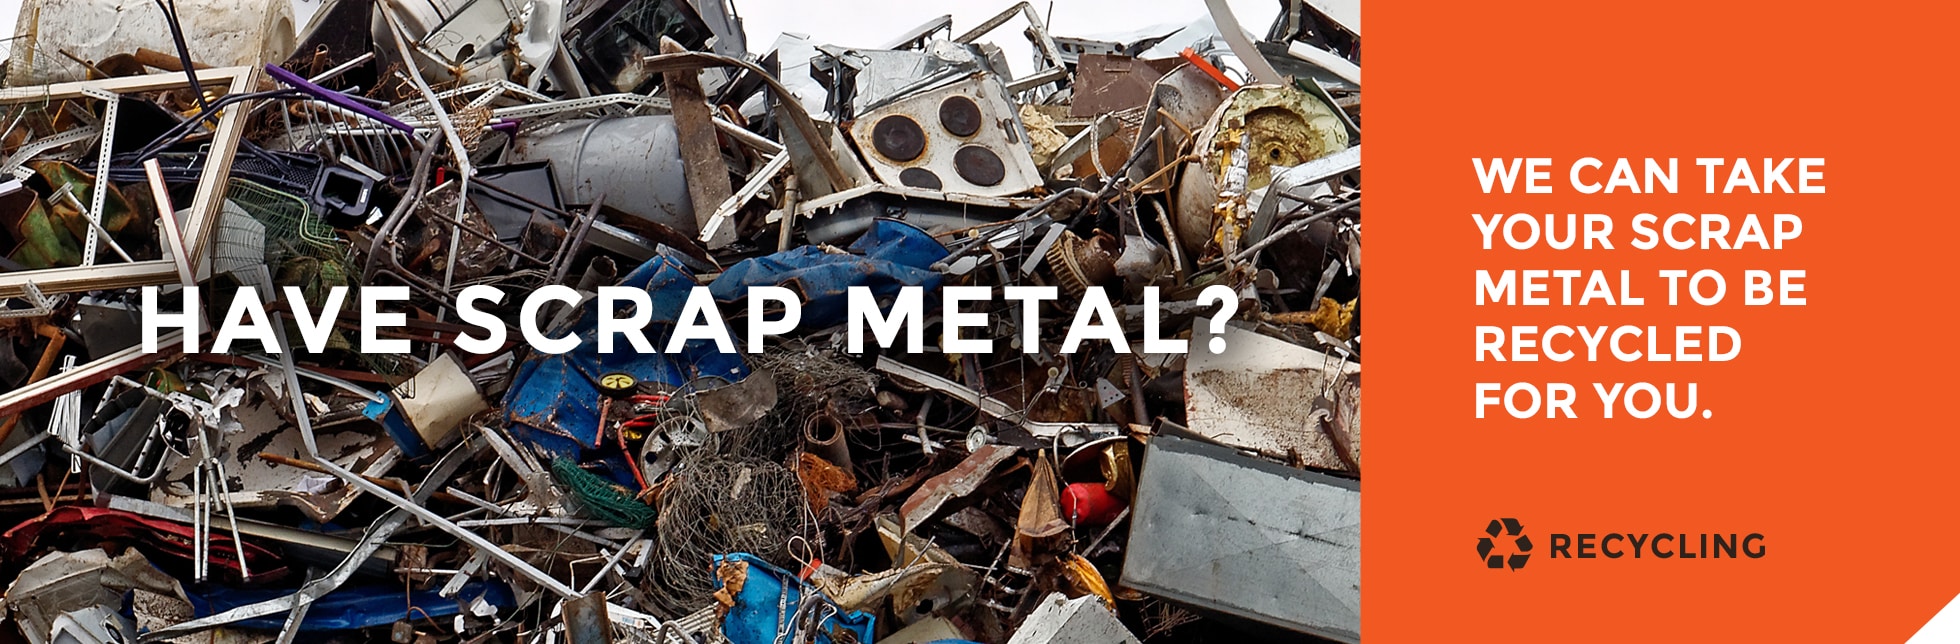 Have Scrap Metal?